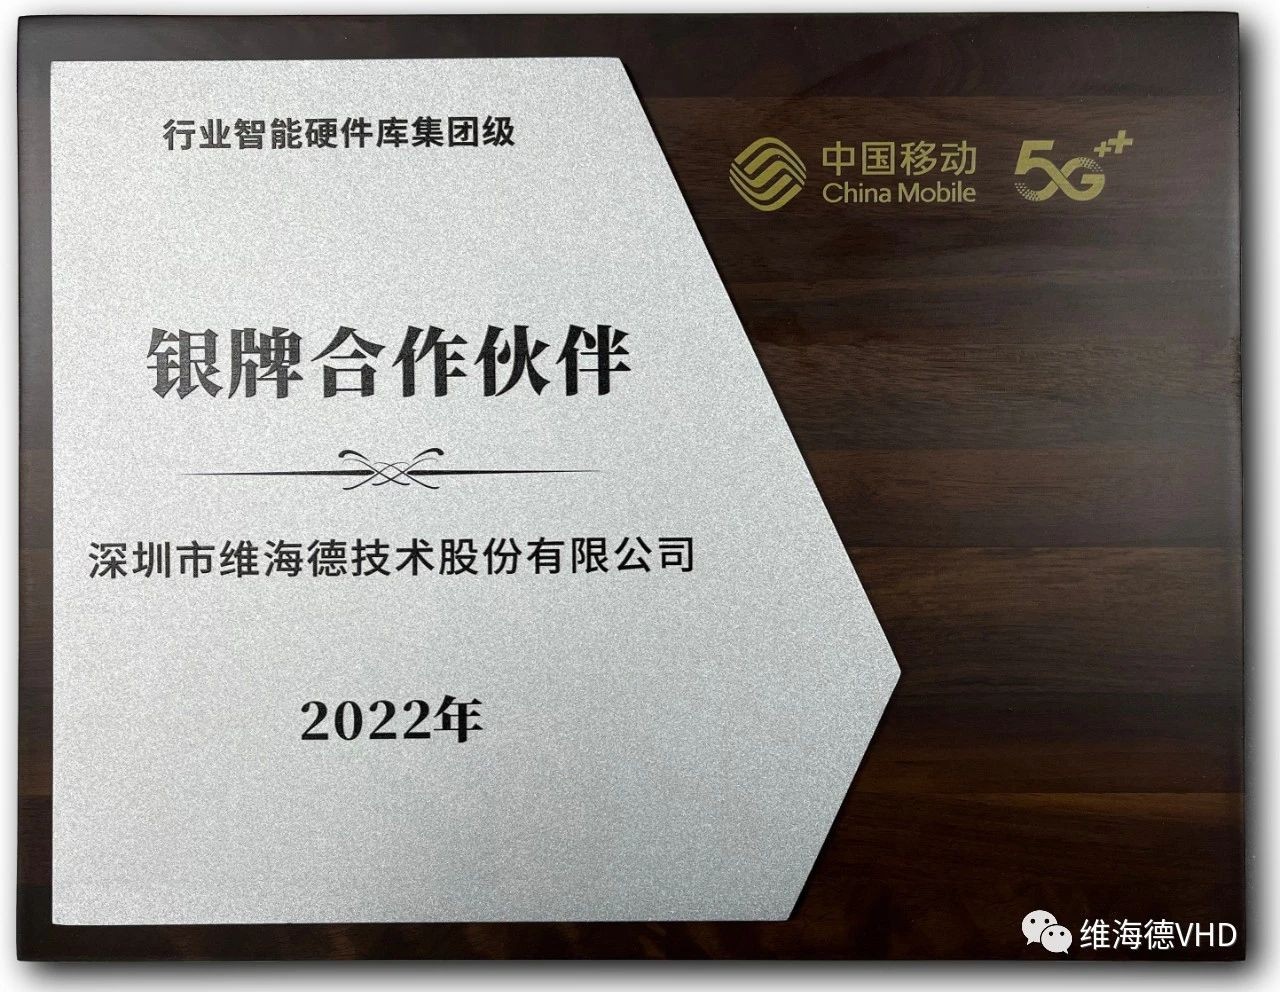 维海德荣获中国移动行业智能硬件库集团级银牌合作伙伴称号